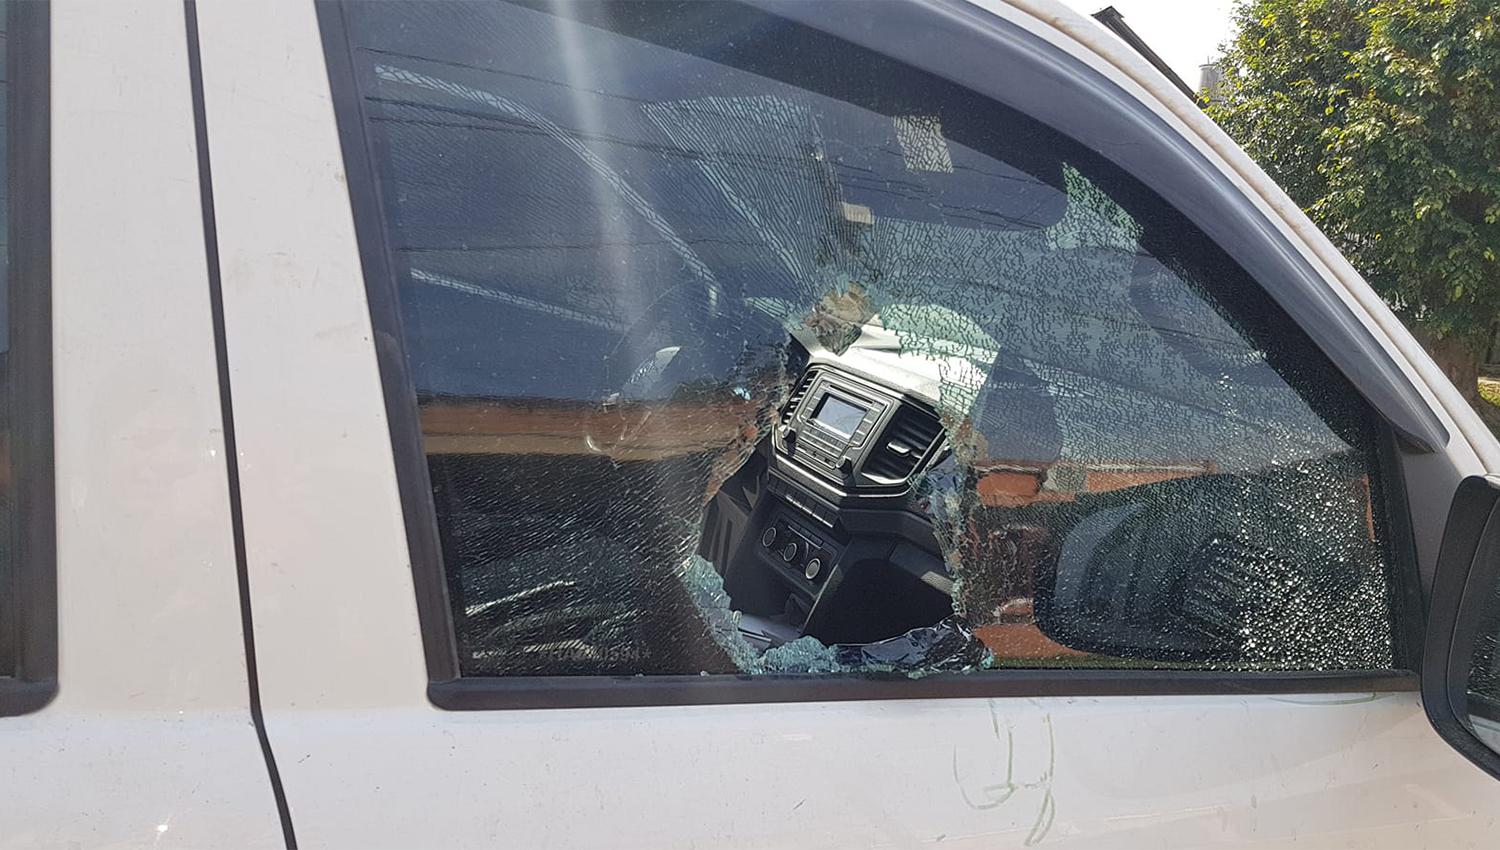 PELIGRO. Rompieron el vidrio de un auto para robar una cartera. FOTO TOMADA DE LA CUENTA DE FACEBOOK DE PATRICIA ARRIETA.